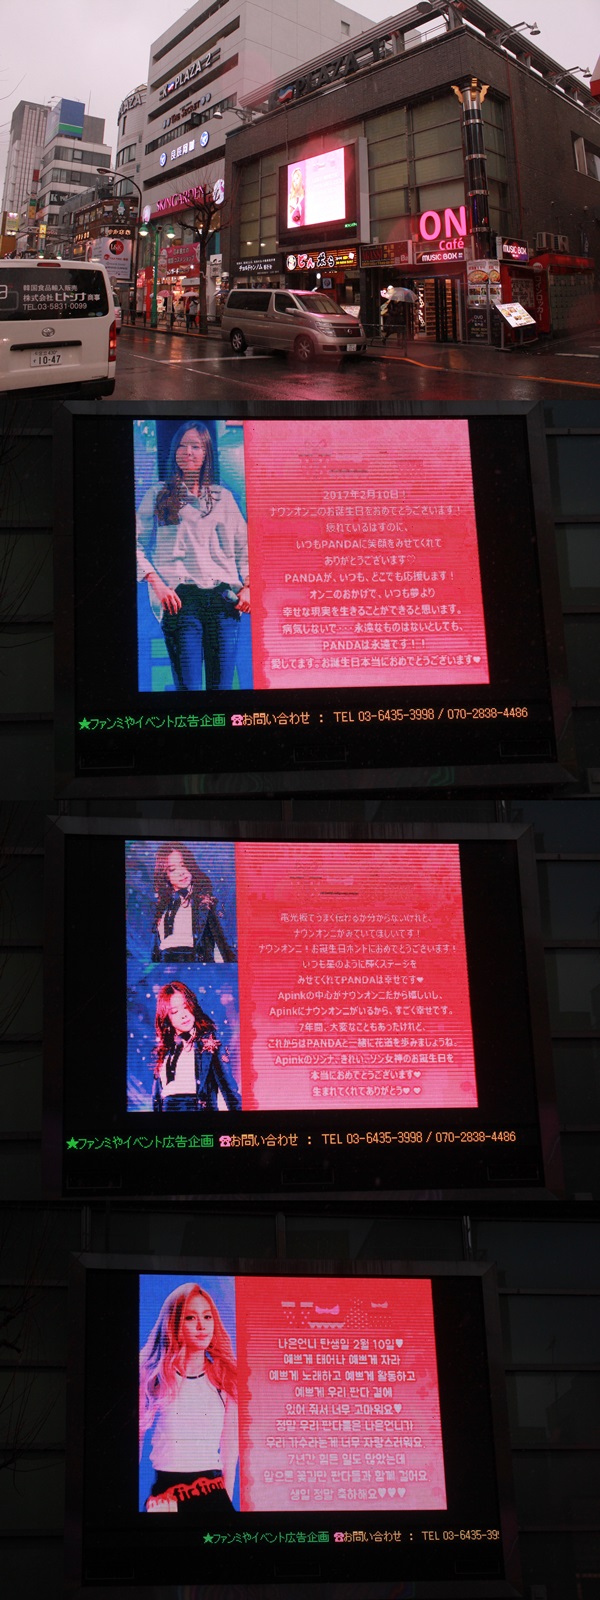 클릭스타워즈에서 주관한 그룹 에이핑크 손나은의 생일 축하 전광판을 공개했다. 이 전광판은 일본 도쿄에 위치했다. /클릭스타워즈 제공